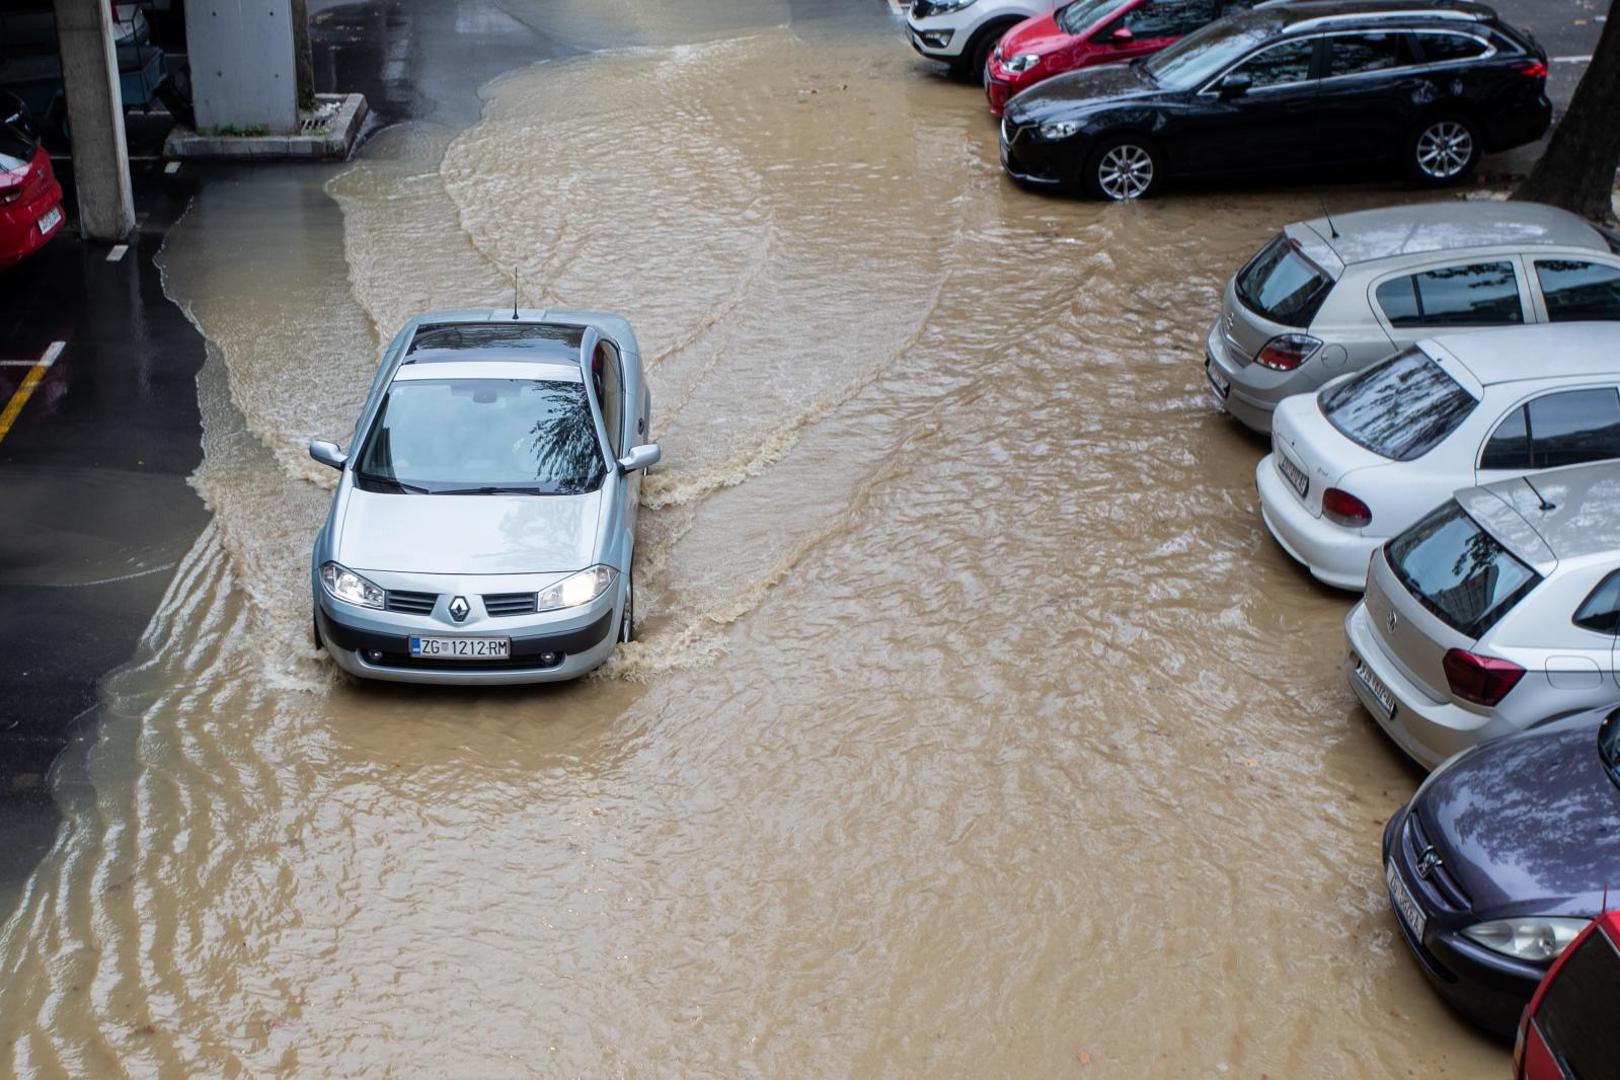 Zbog puknuća vodovodne cijevi, poplavljen je parking u prilazu Ivana Visine u zagrebačkom naselju Siget. 